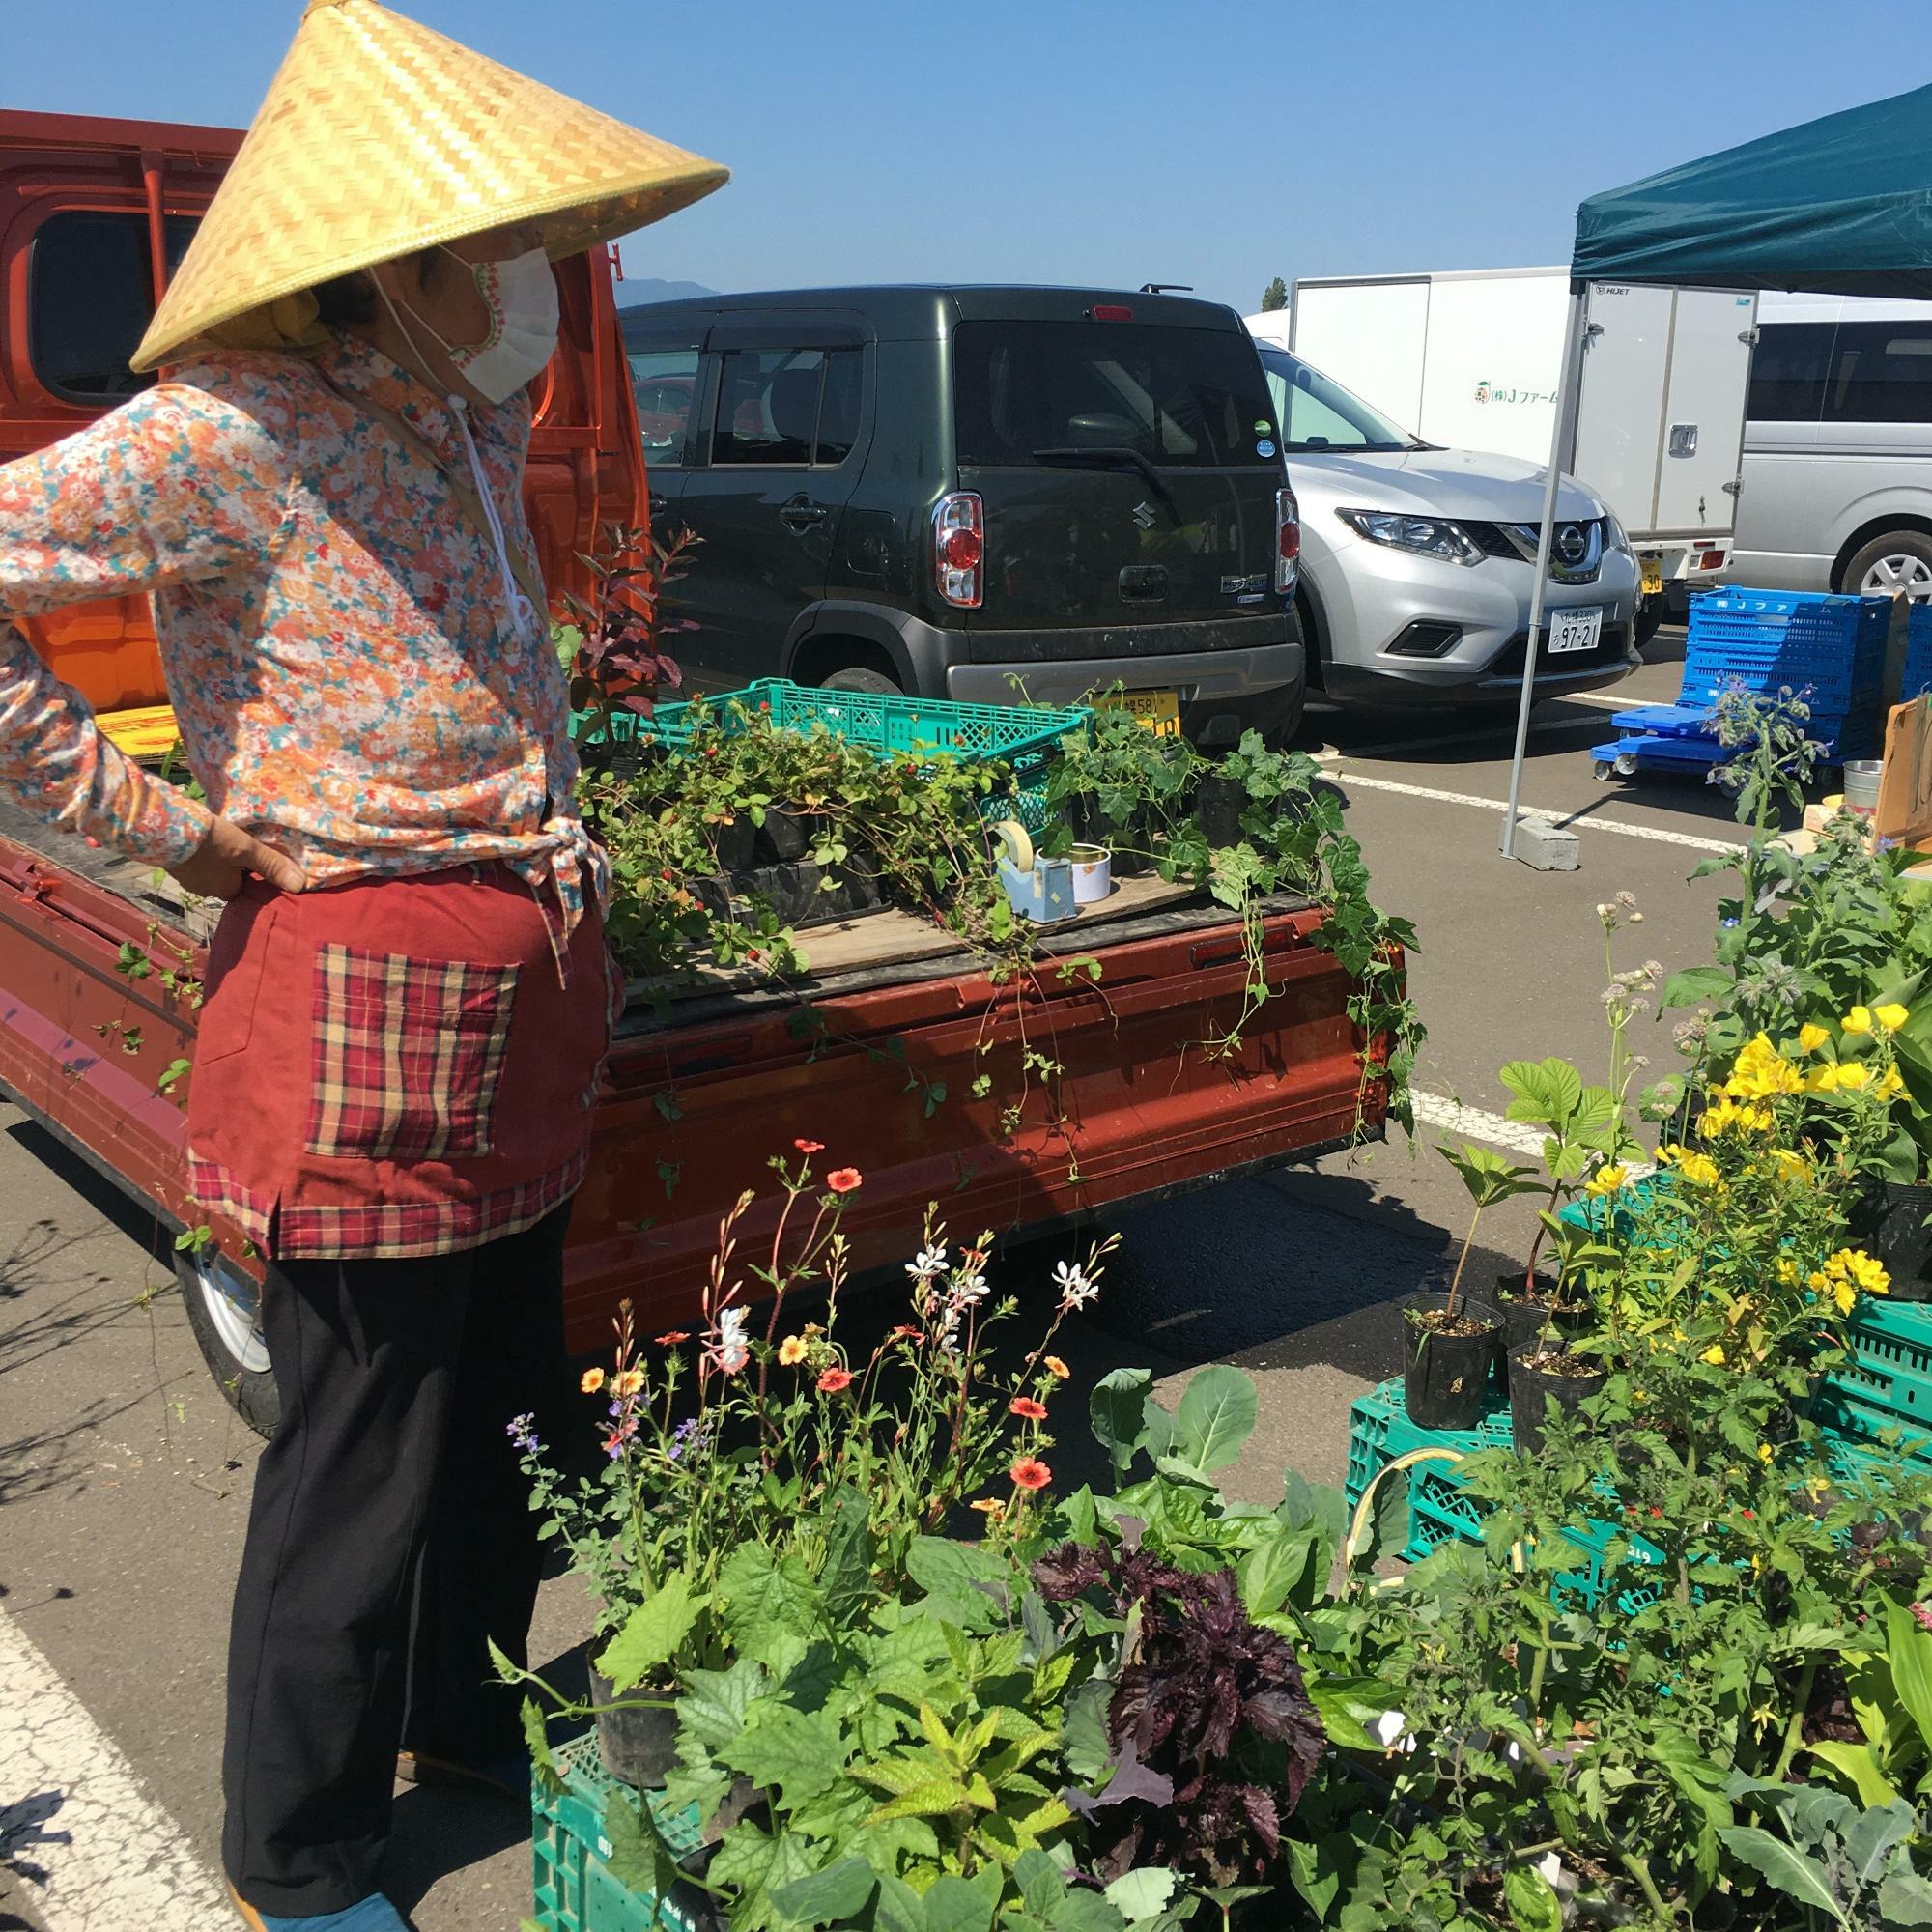 やさいの販売だけではなく、野菜の苗や庭の花の苗もあります。出店者の細貝さんはいつもマニアックな苗や、8月になると珍しい野菜を持って出店するので、ファンもとても多いのです